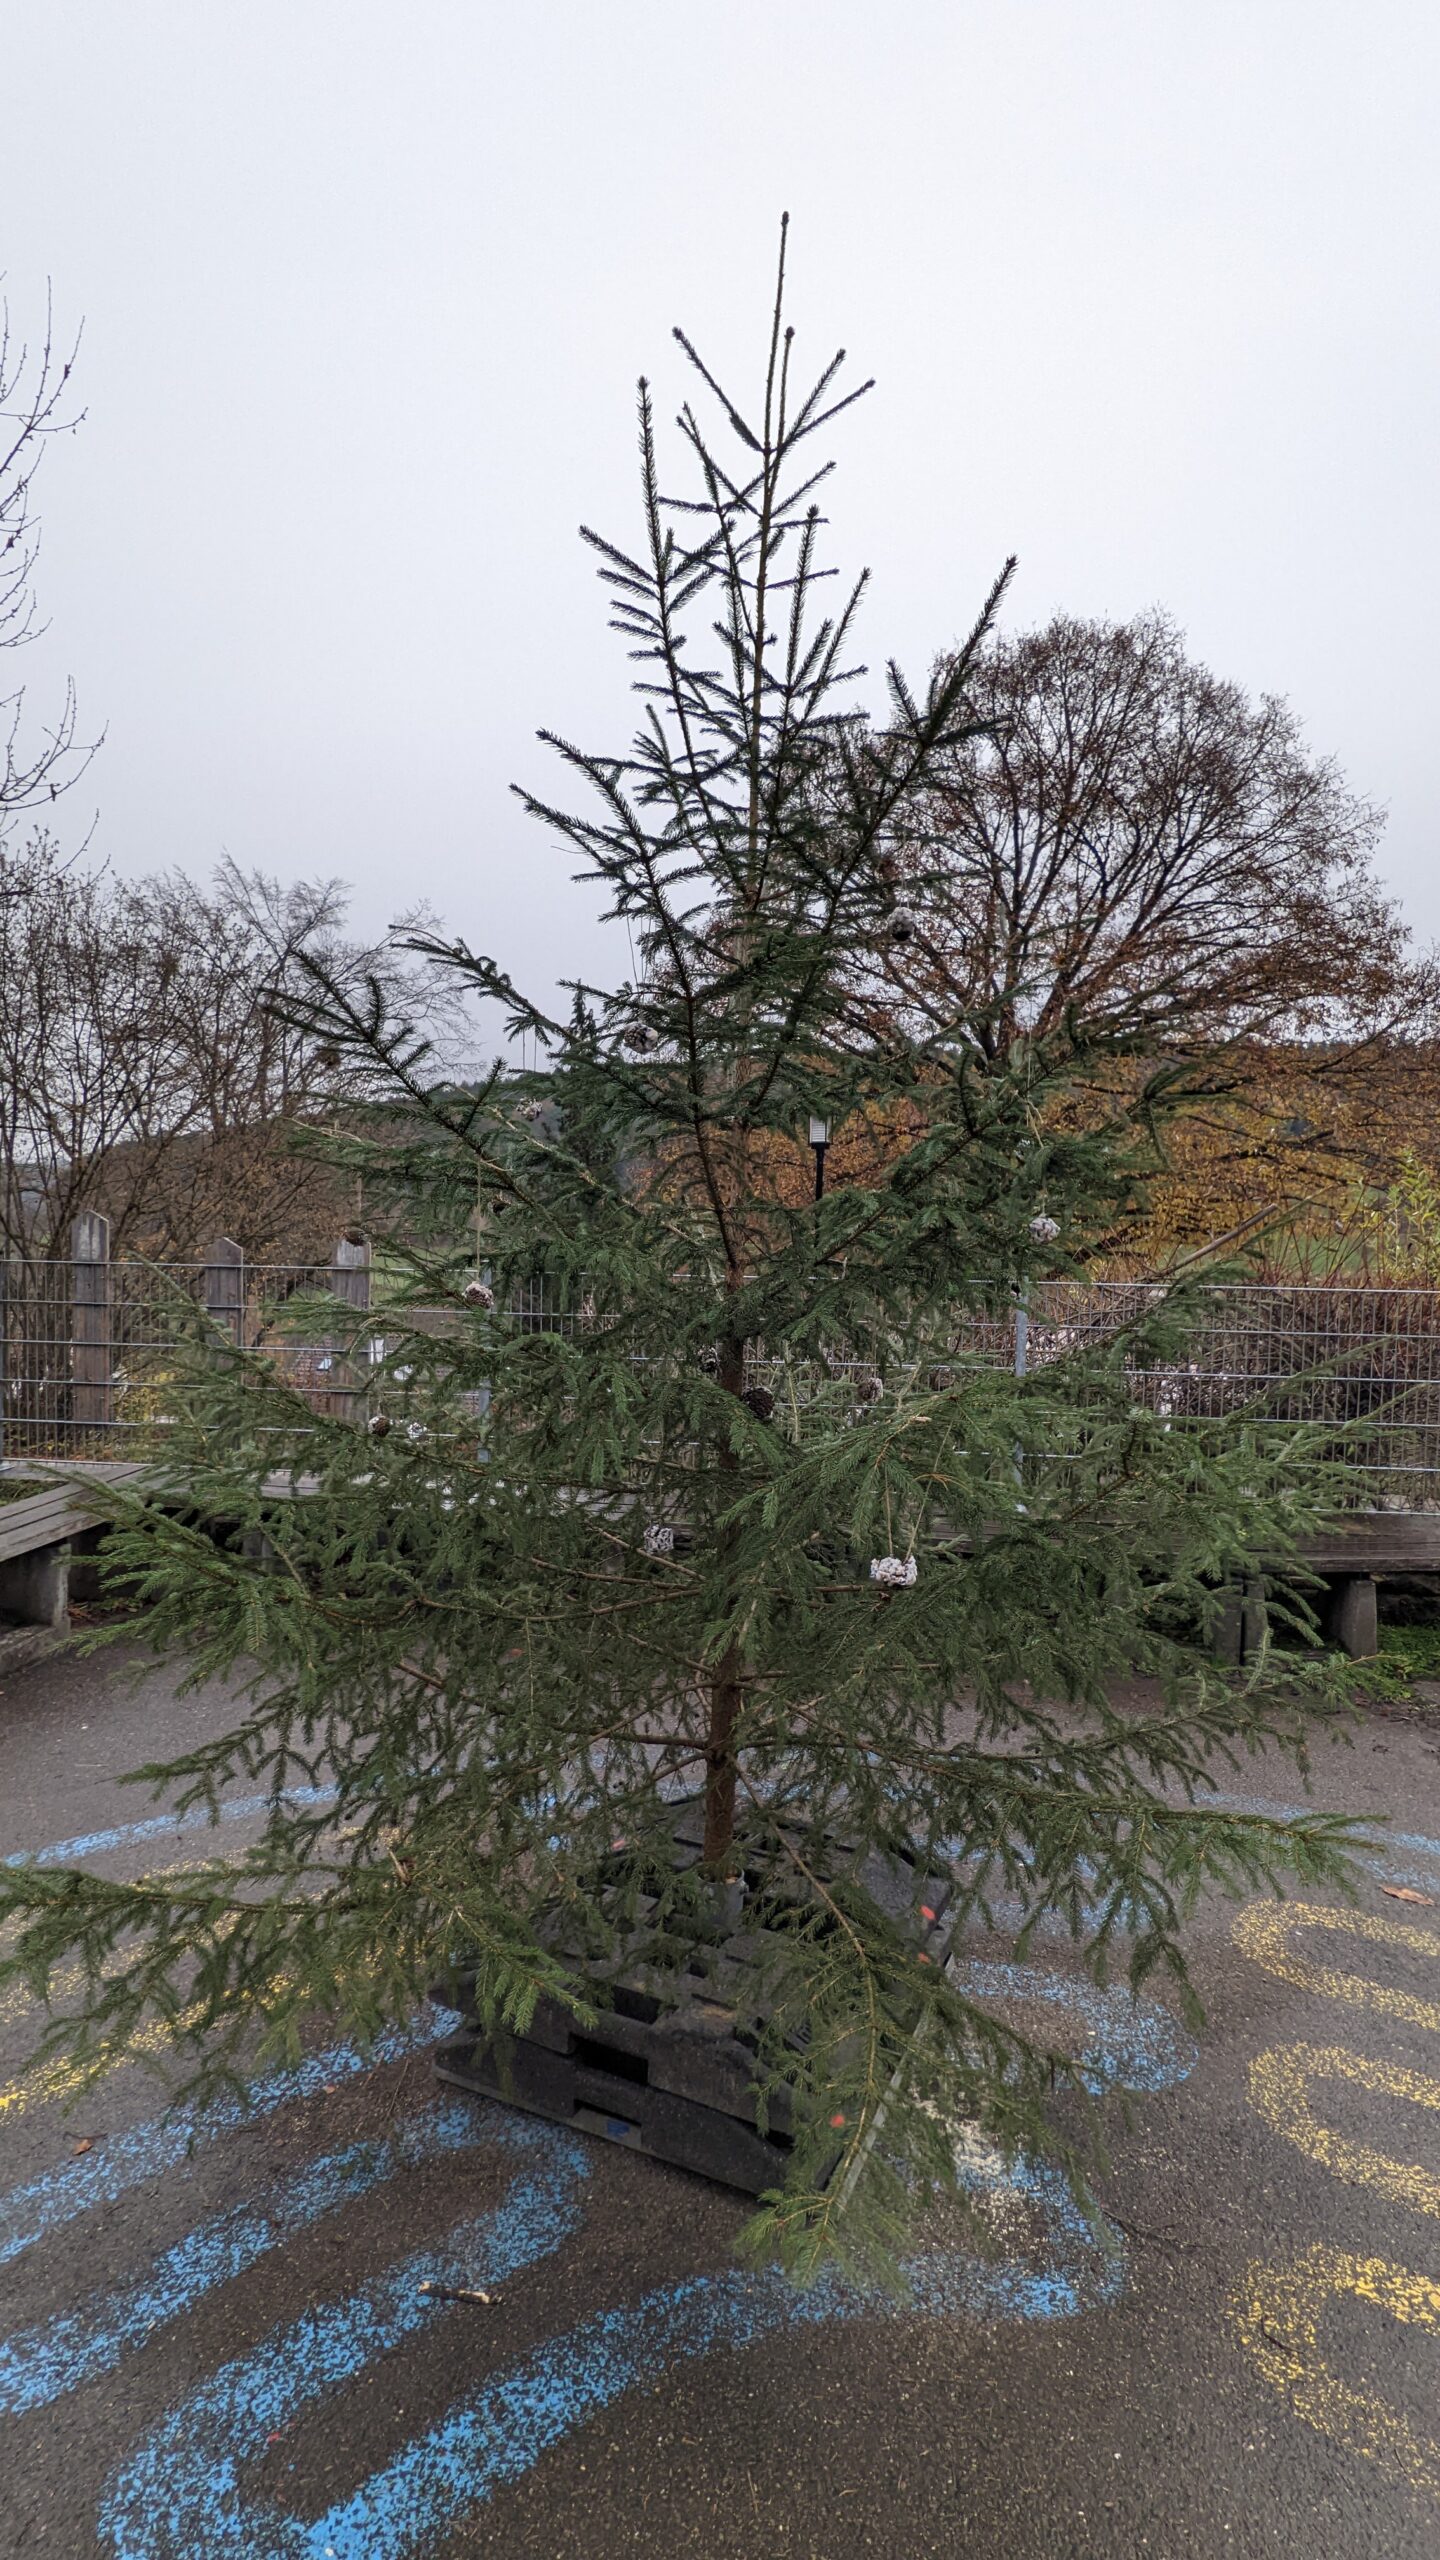 Am ganzen Weihnachtsbaum sieht man schon die verschiedenen selbst hergestellten Aufhänger mit Vogelfutter.